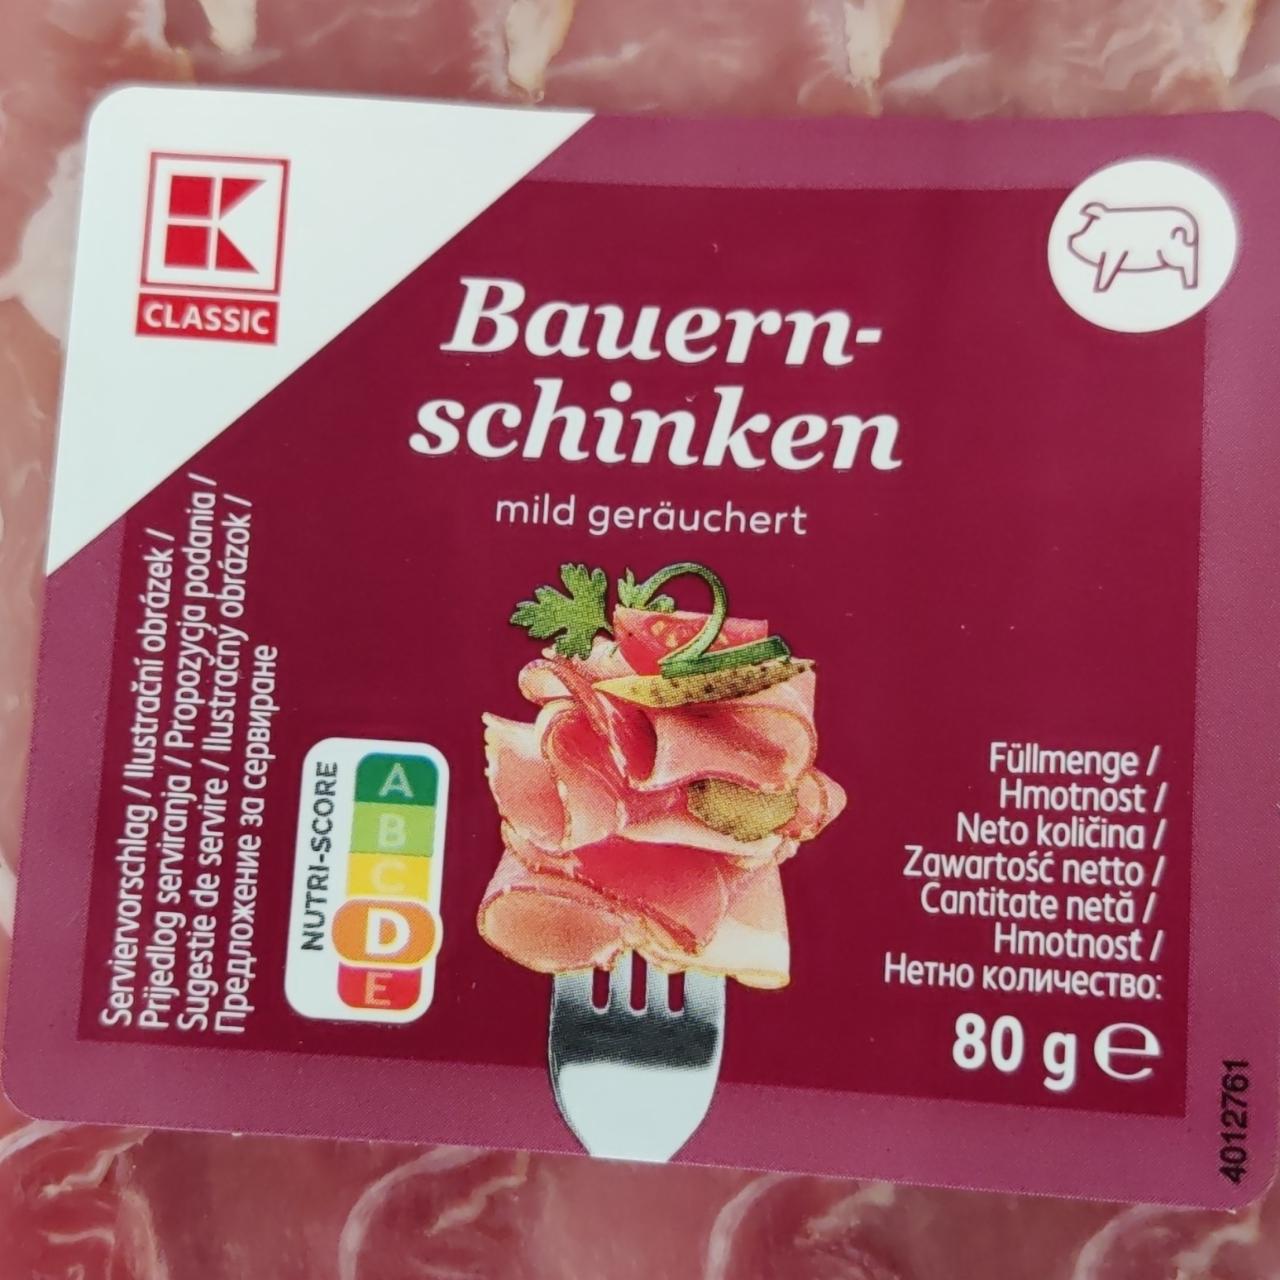 Zdjęcia - Bauern - schinken mild geräuchert K-Classic